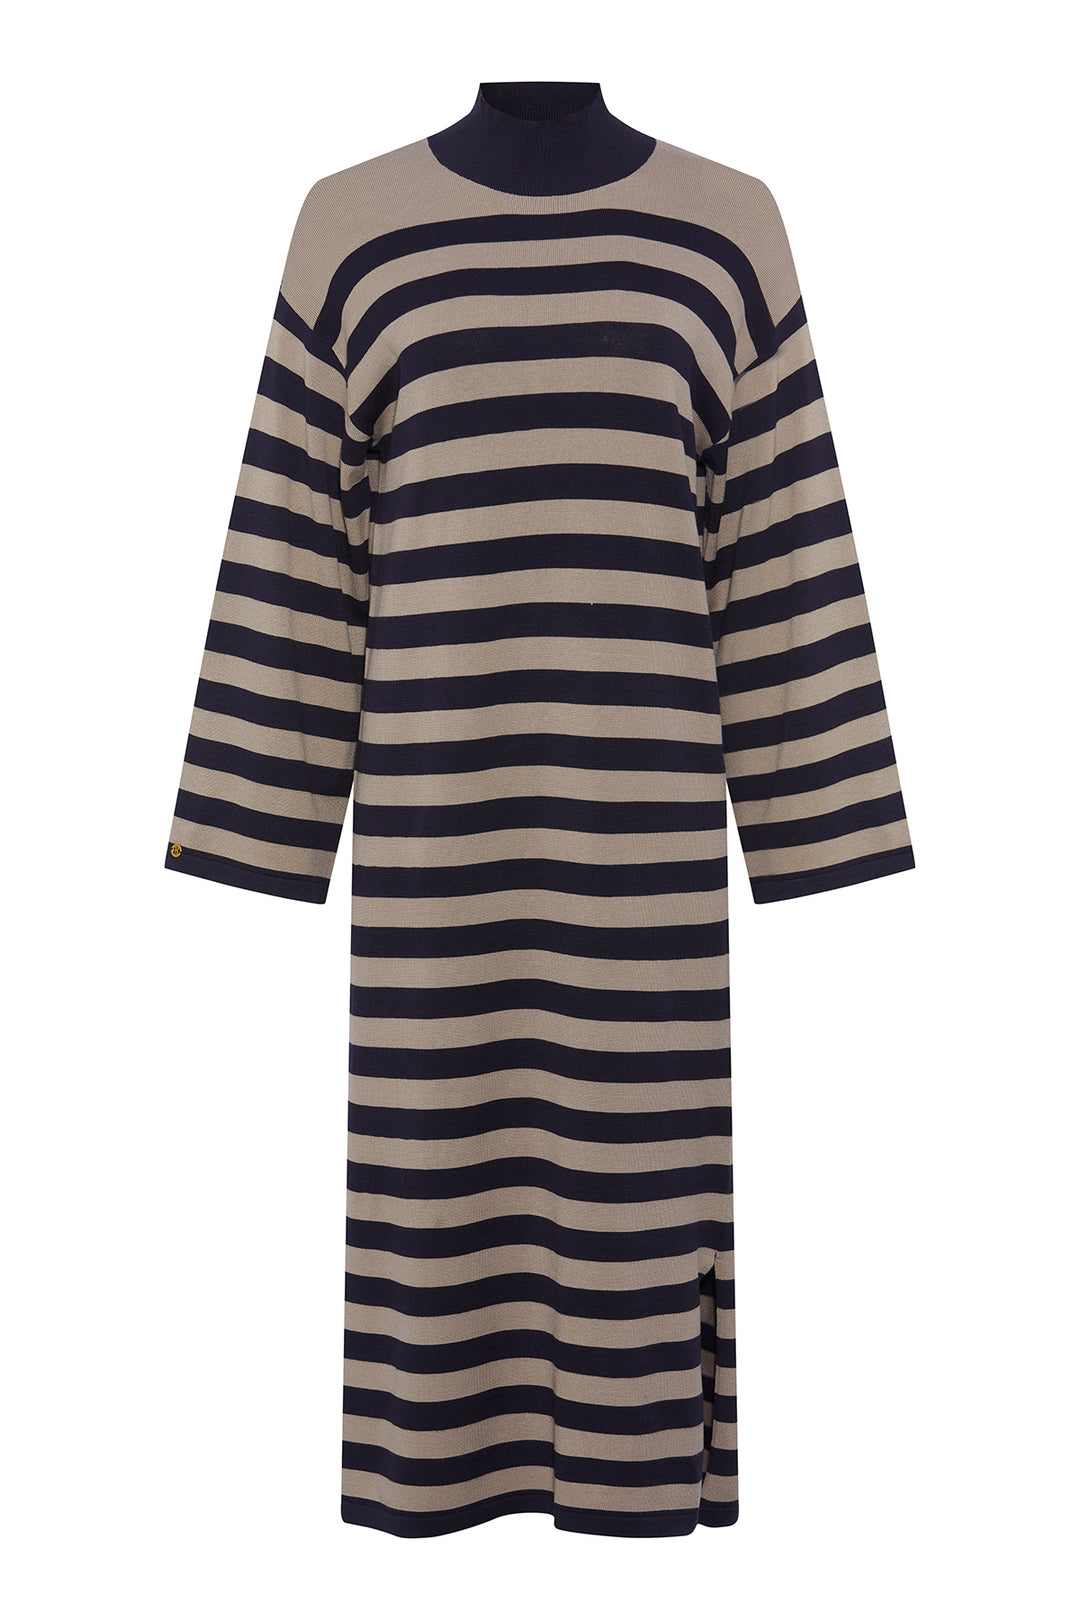 PBO Accept stripe knit dress KNITWEAR, HEAVY 682 Sand/Blue stripe